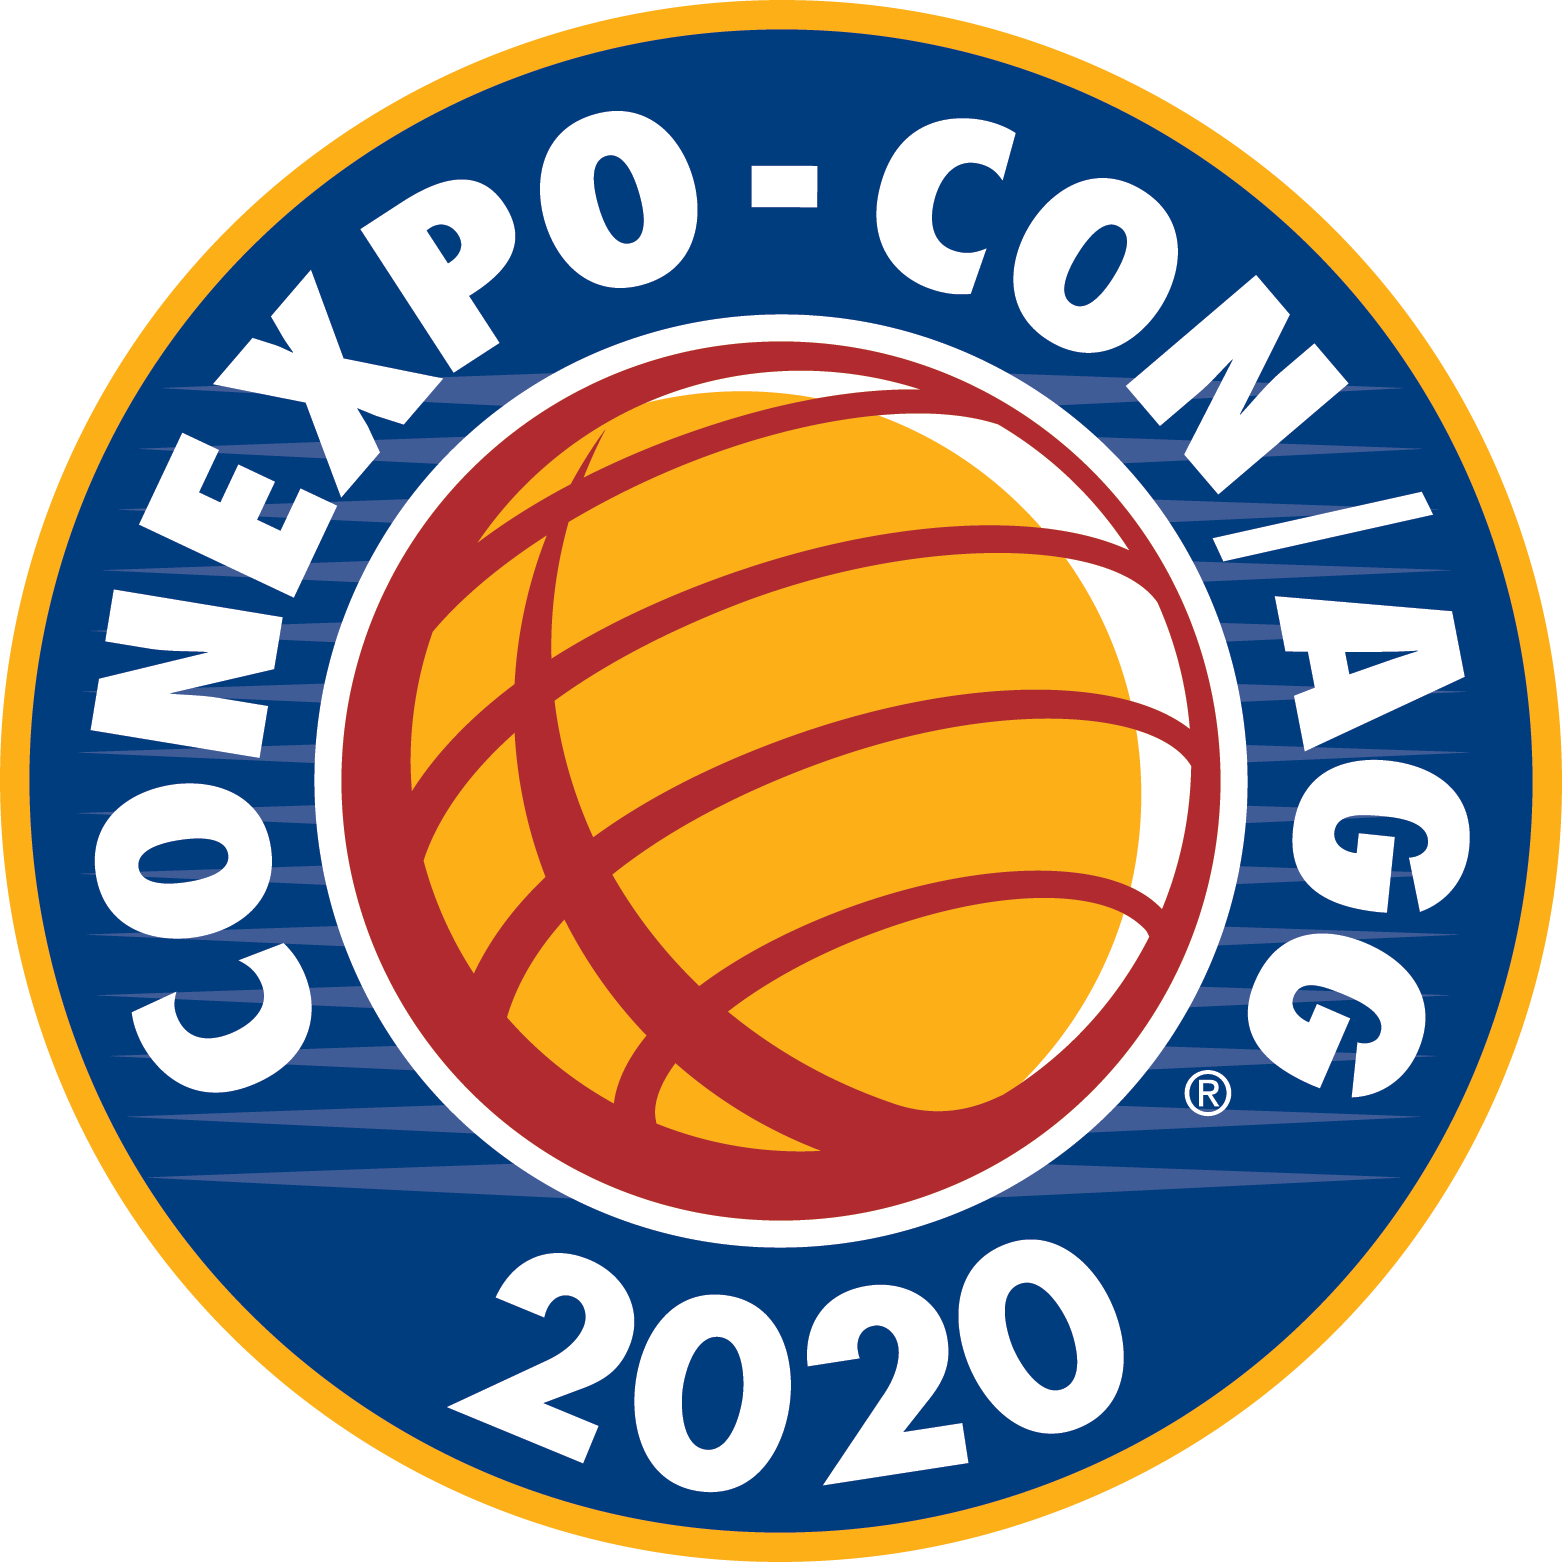 CONEXPO-CON/AGG 2020